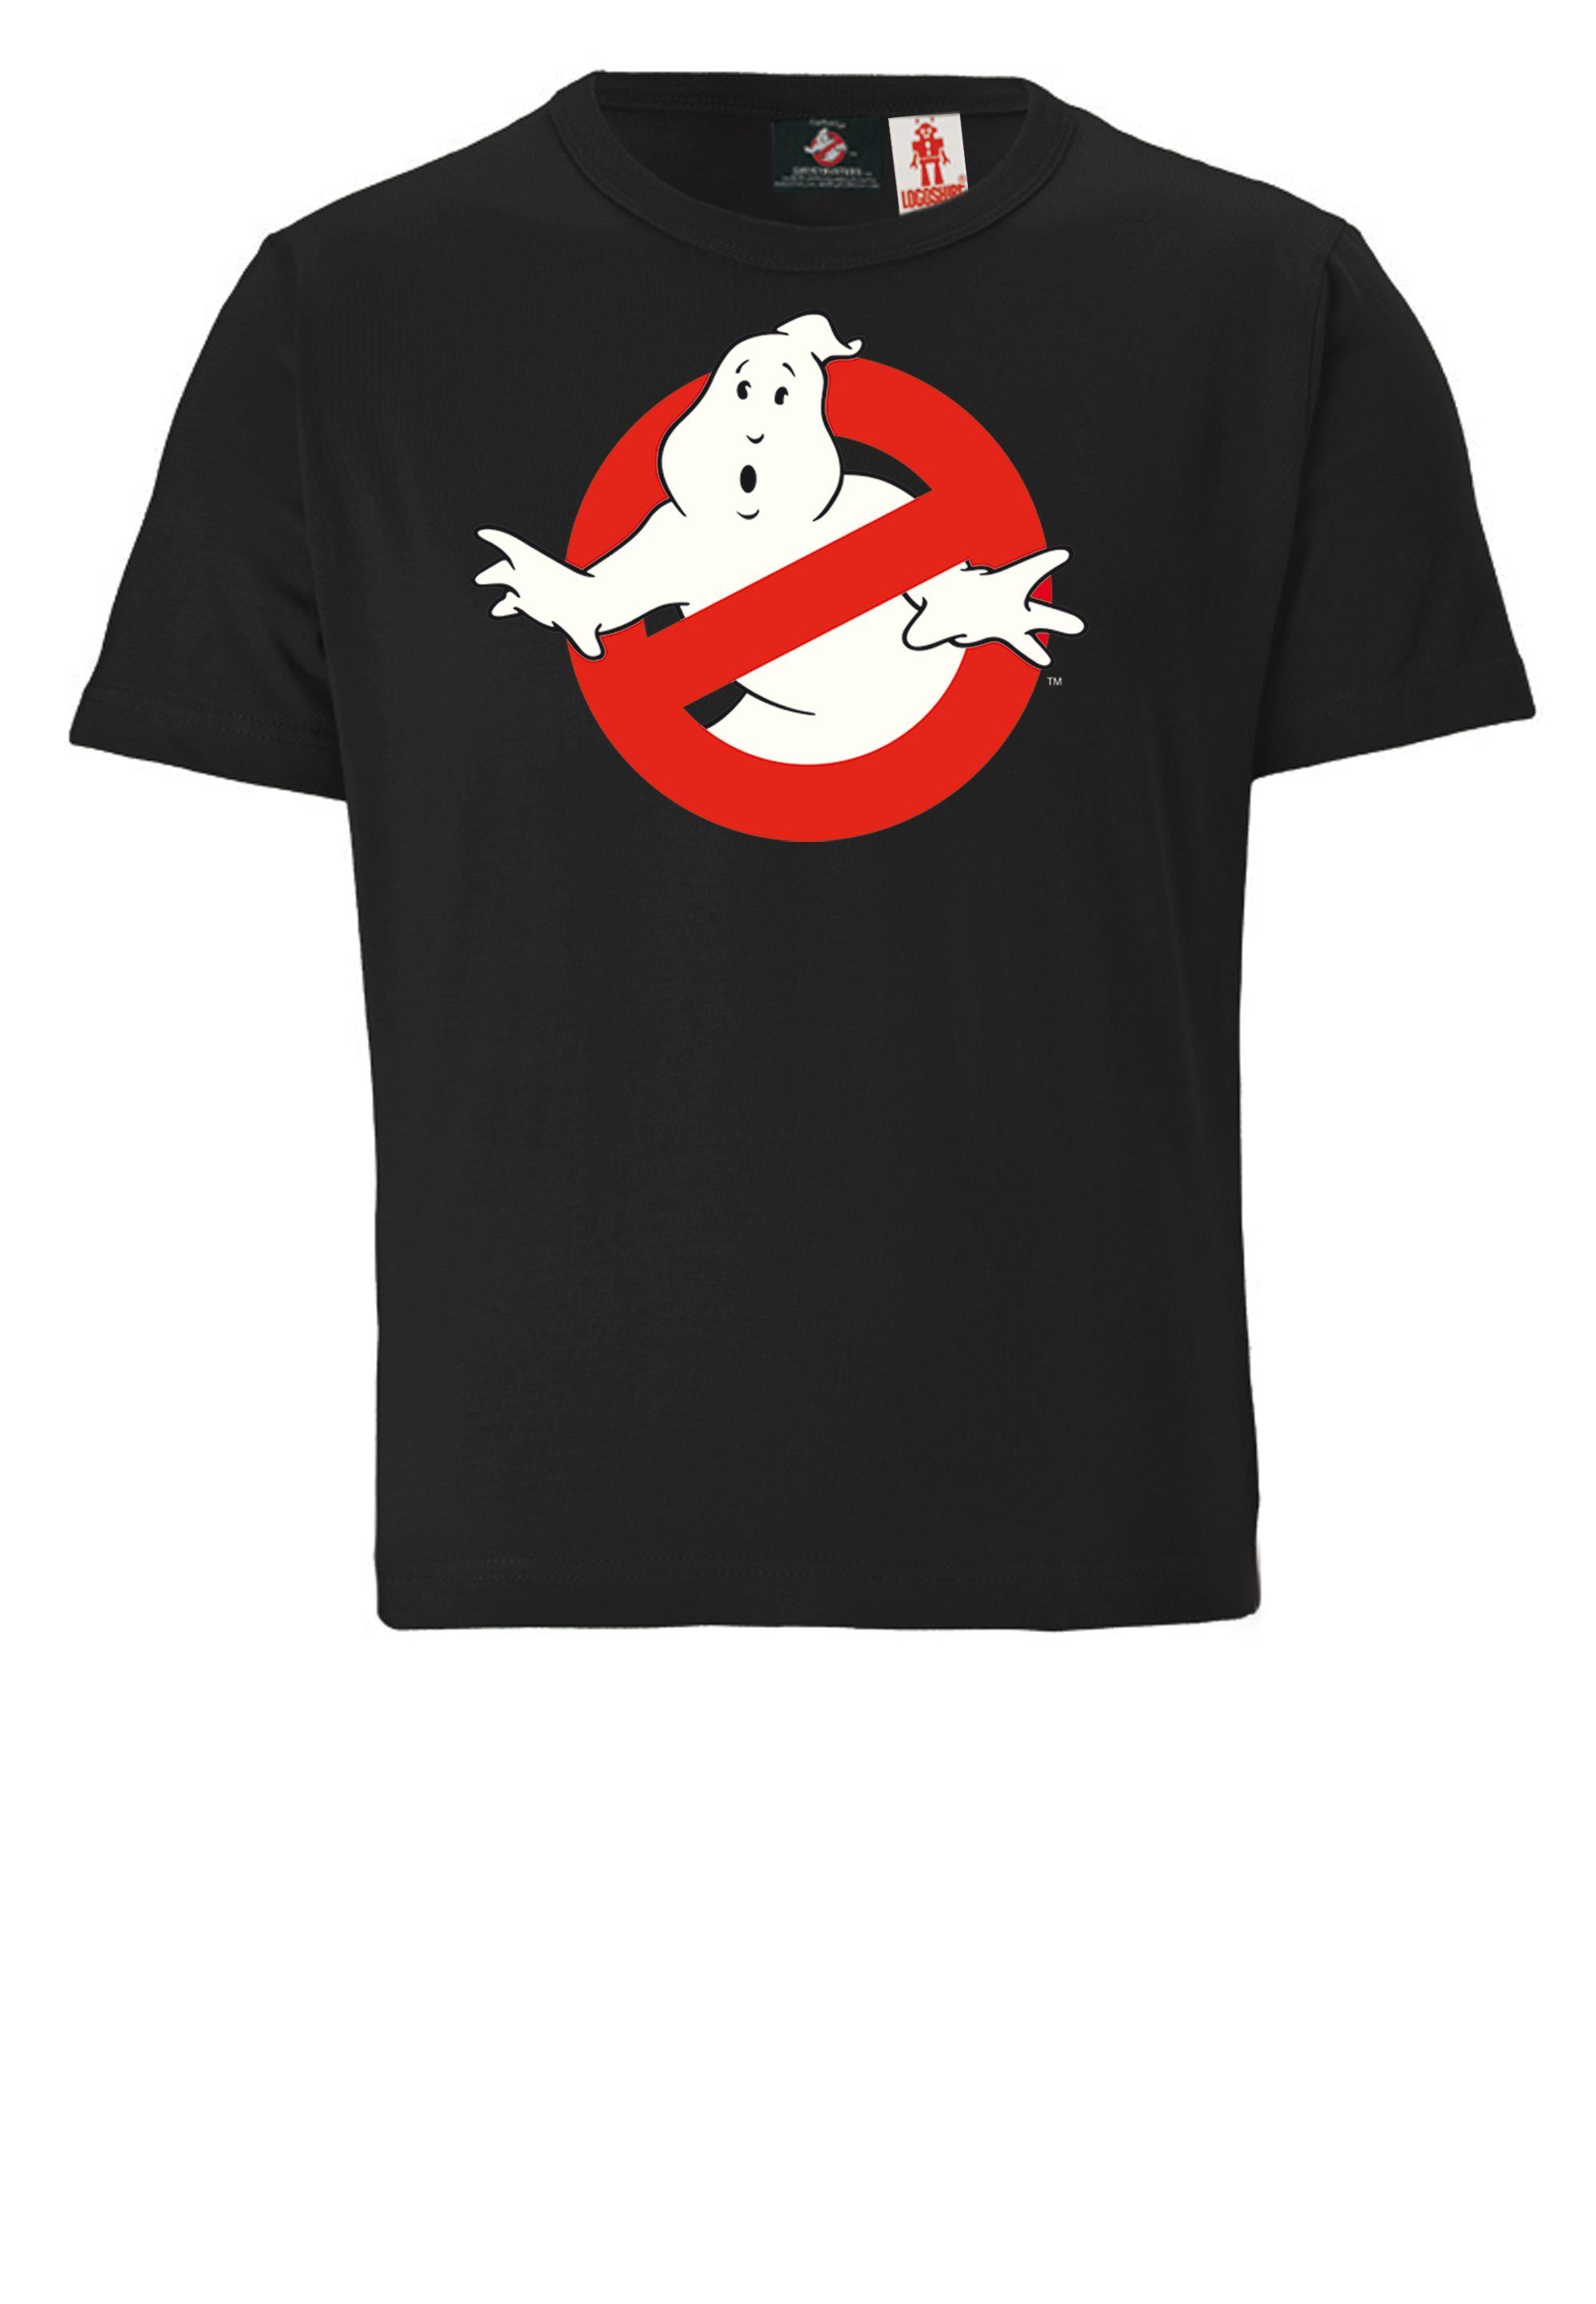 LOGOSHIRT T-Shirt Ghostbusters lizenziertem Design mit